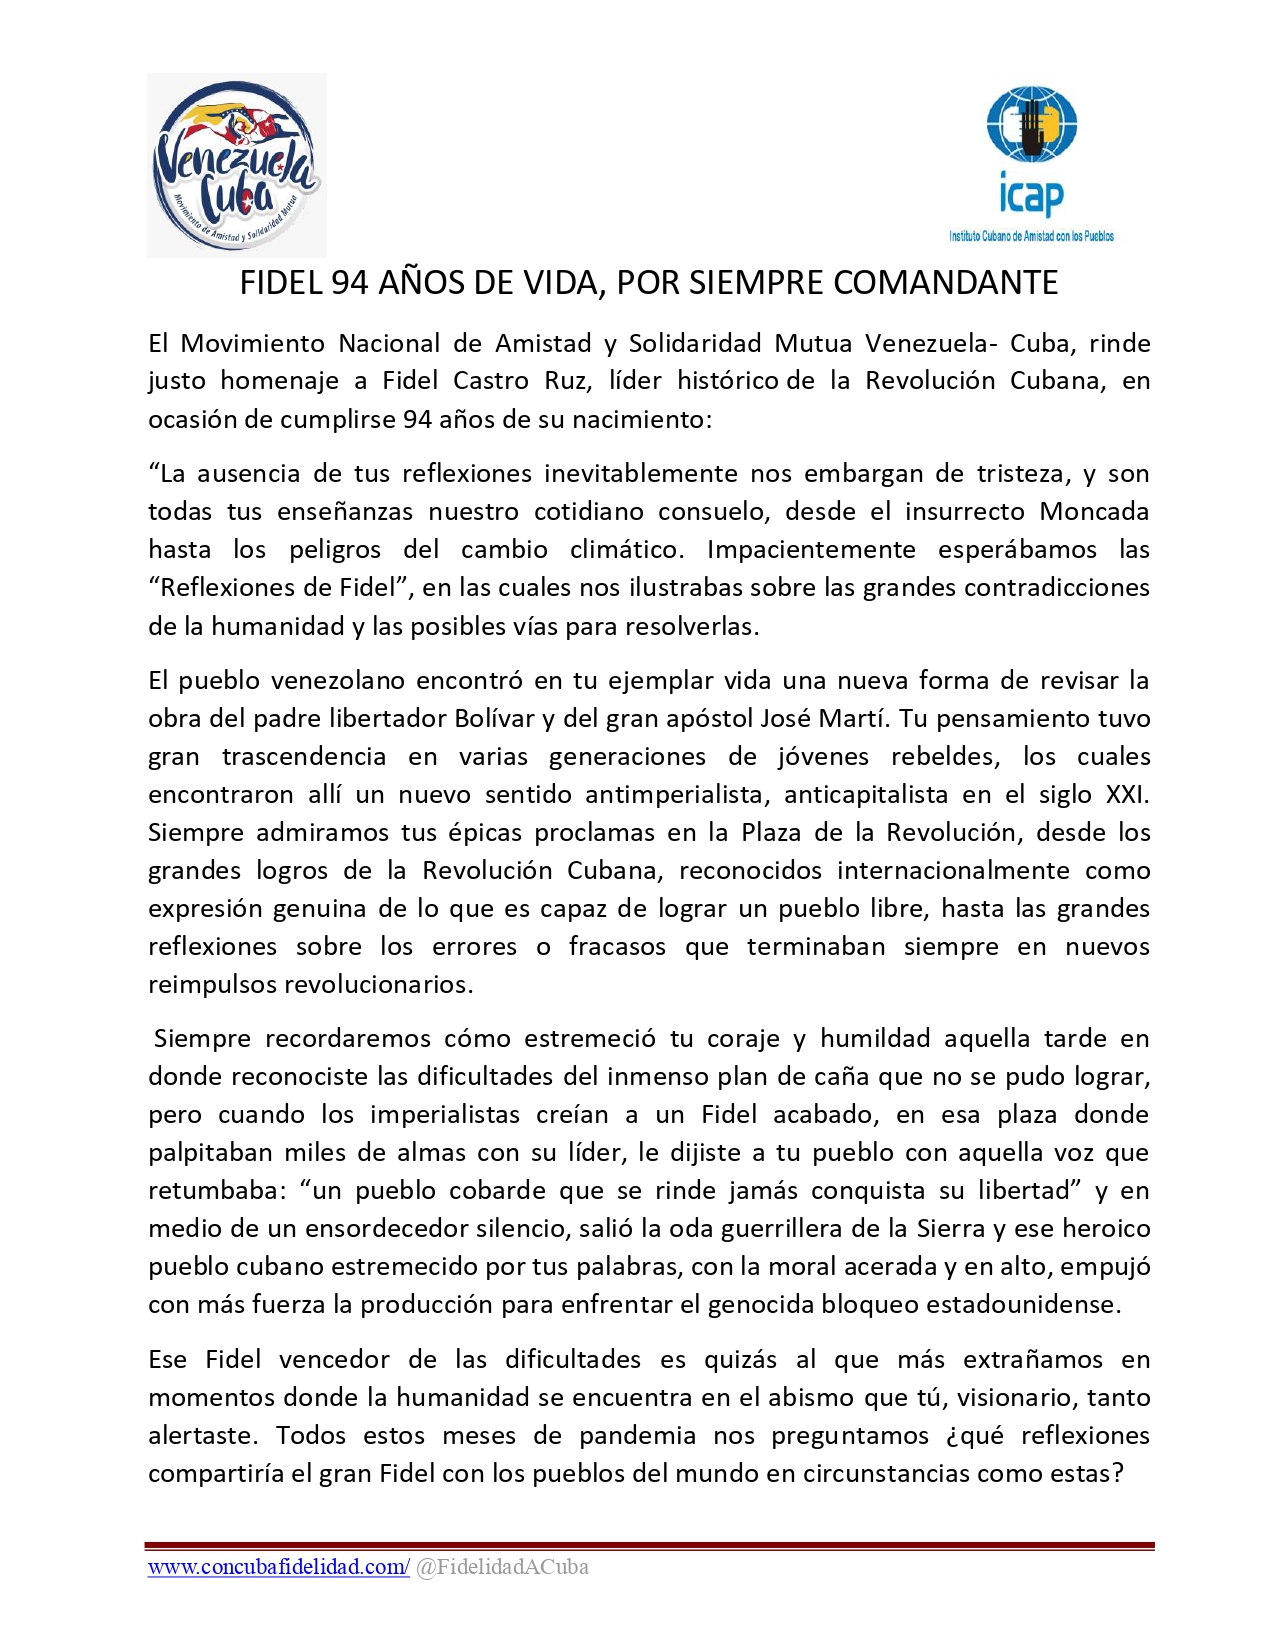 FIDEL 94 AÑOS DE VIDA, POR SIEMPRE COMANDANTE – Movimiento Nacional de  Amistad y Solidaridad Mutua Venezuela Cuba